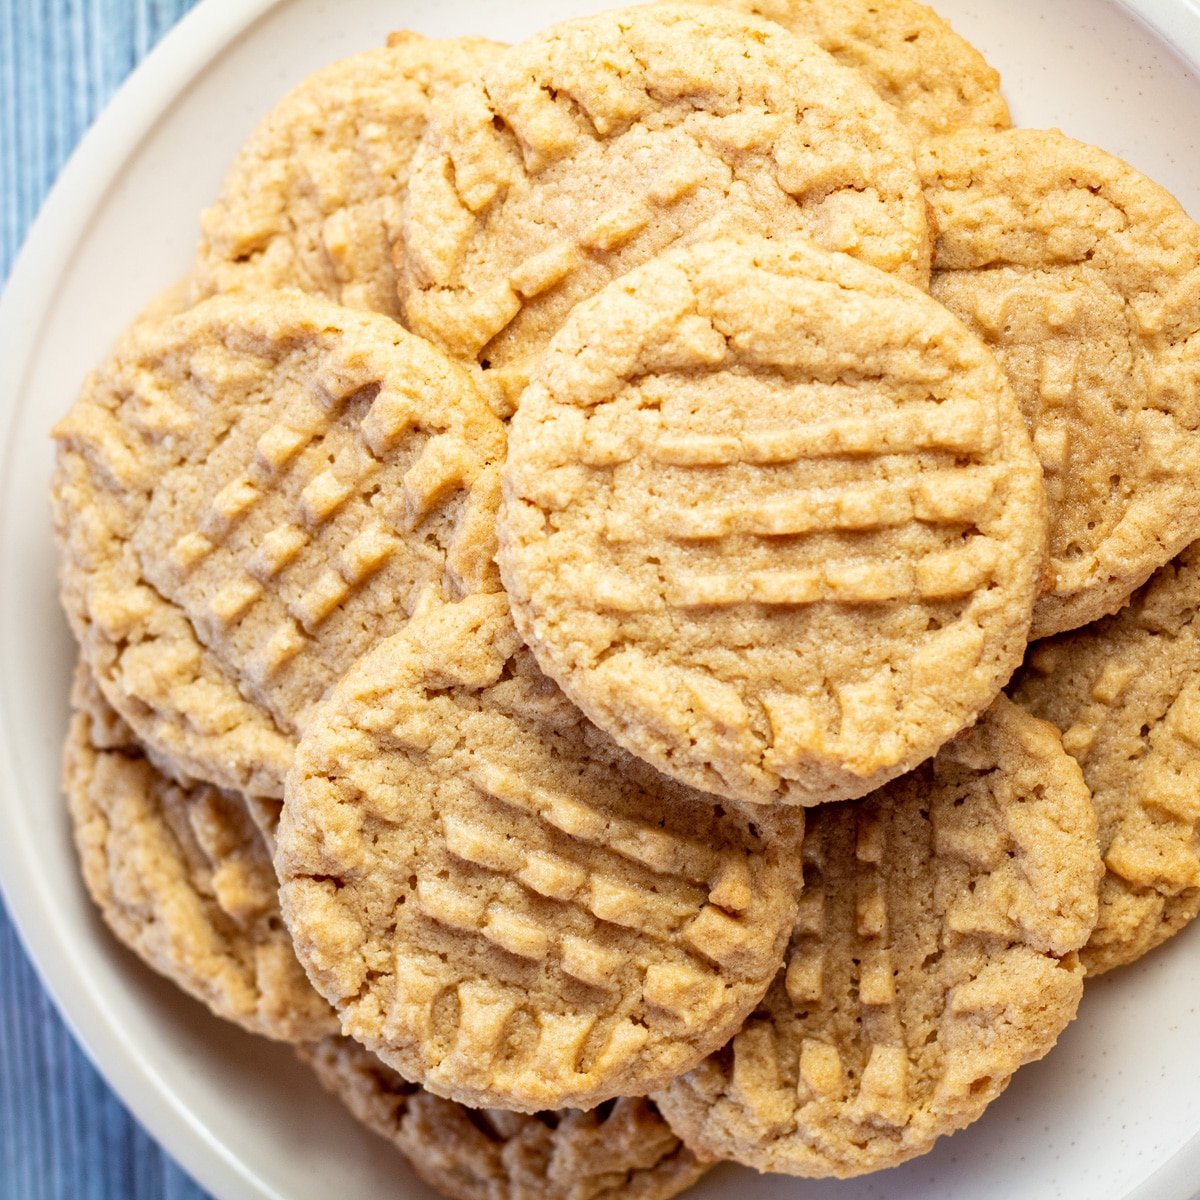 Immagine quadrata di biscotti al burro di arachidi con farina di mandorle su un piatto bianco.